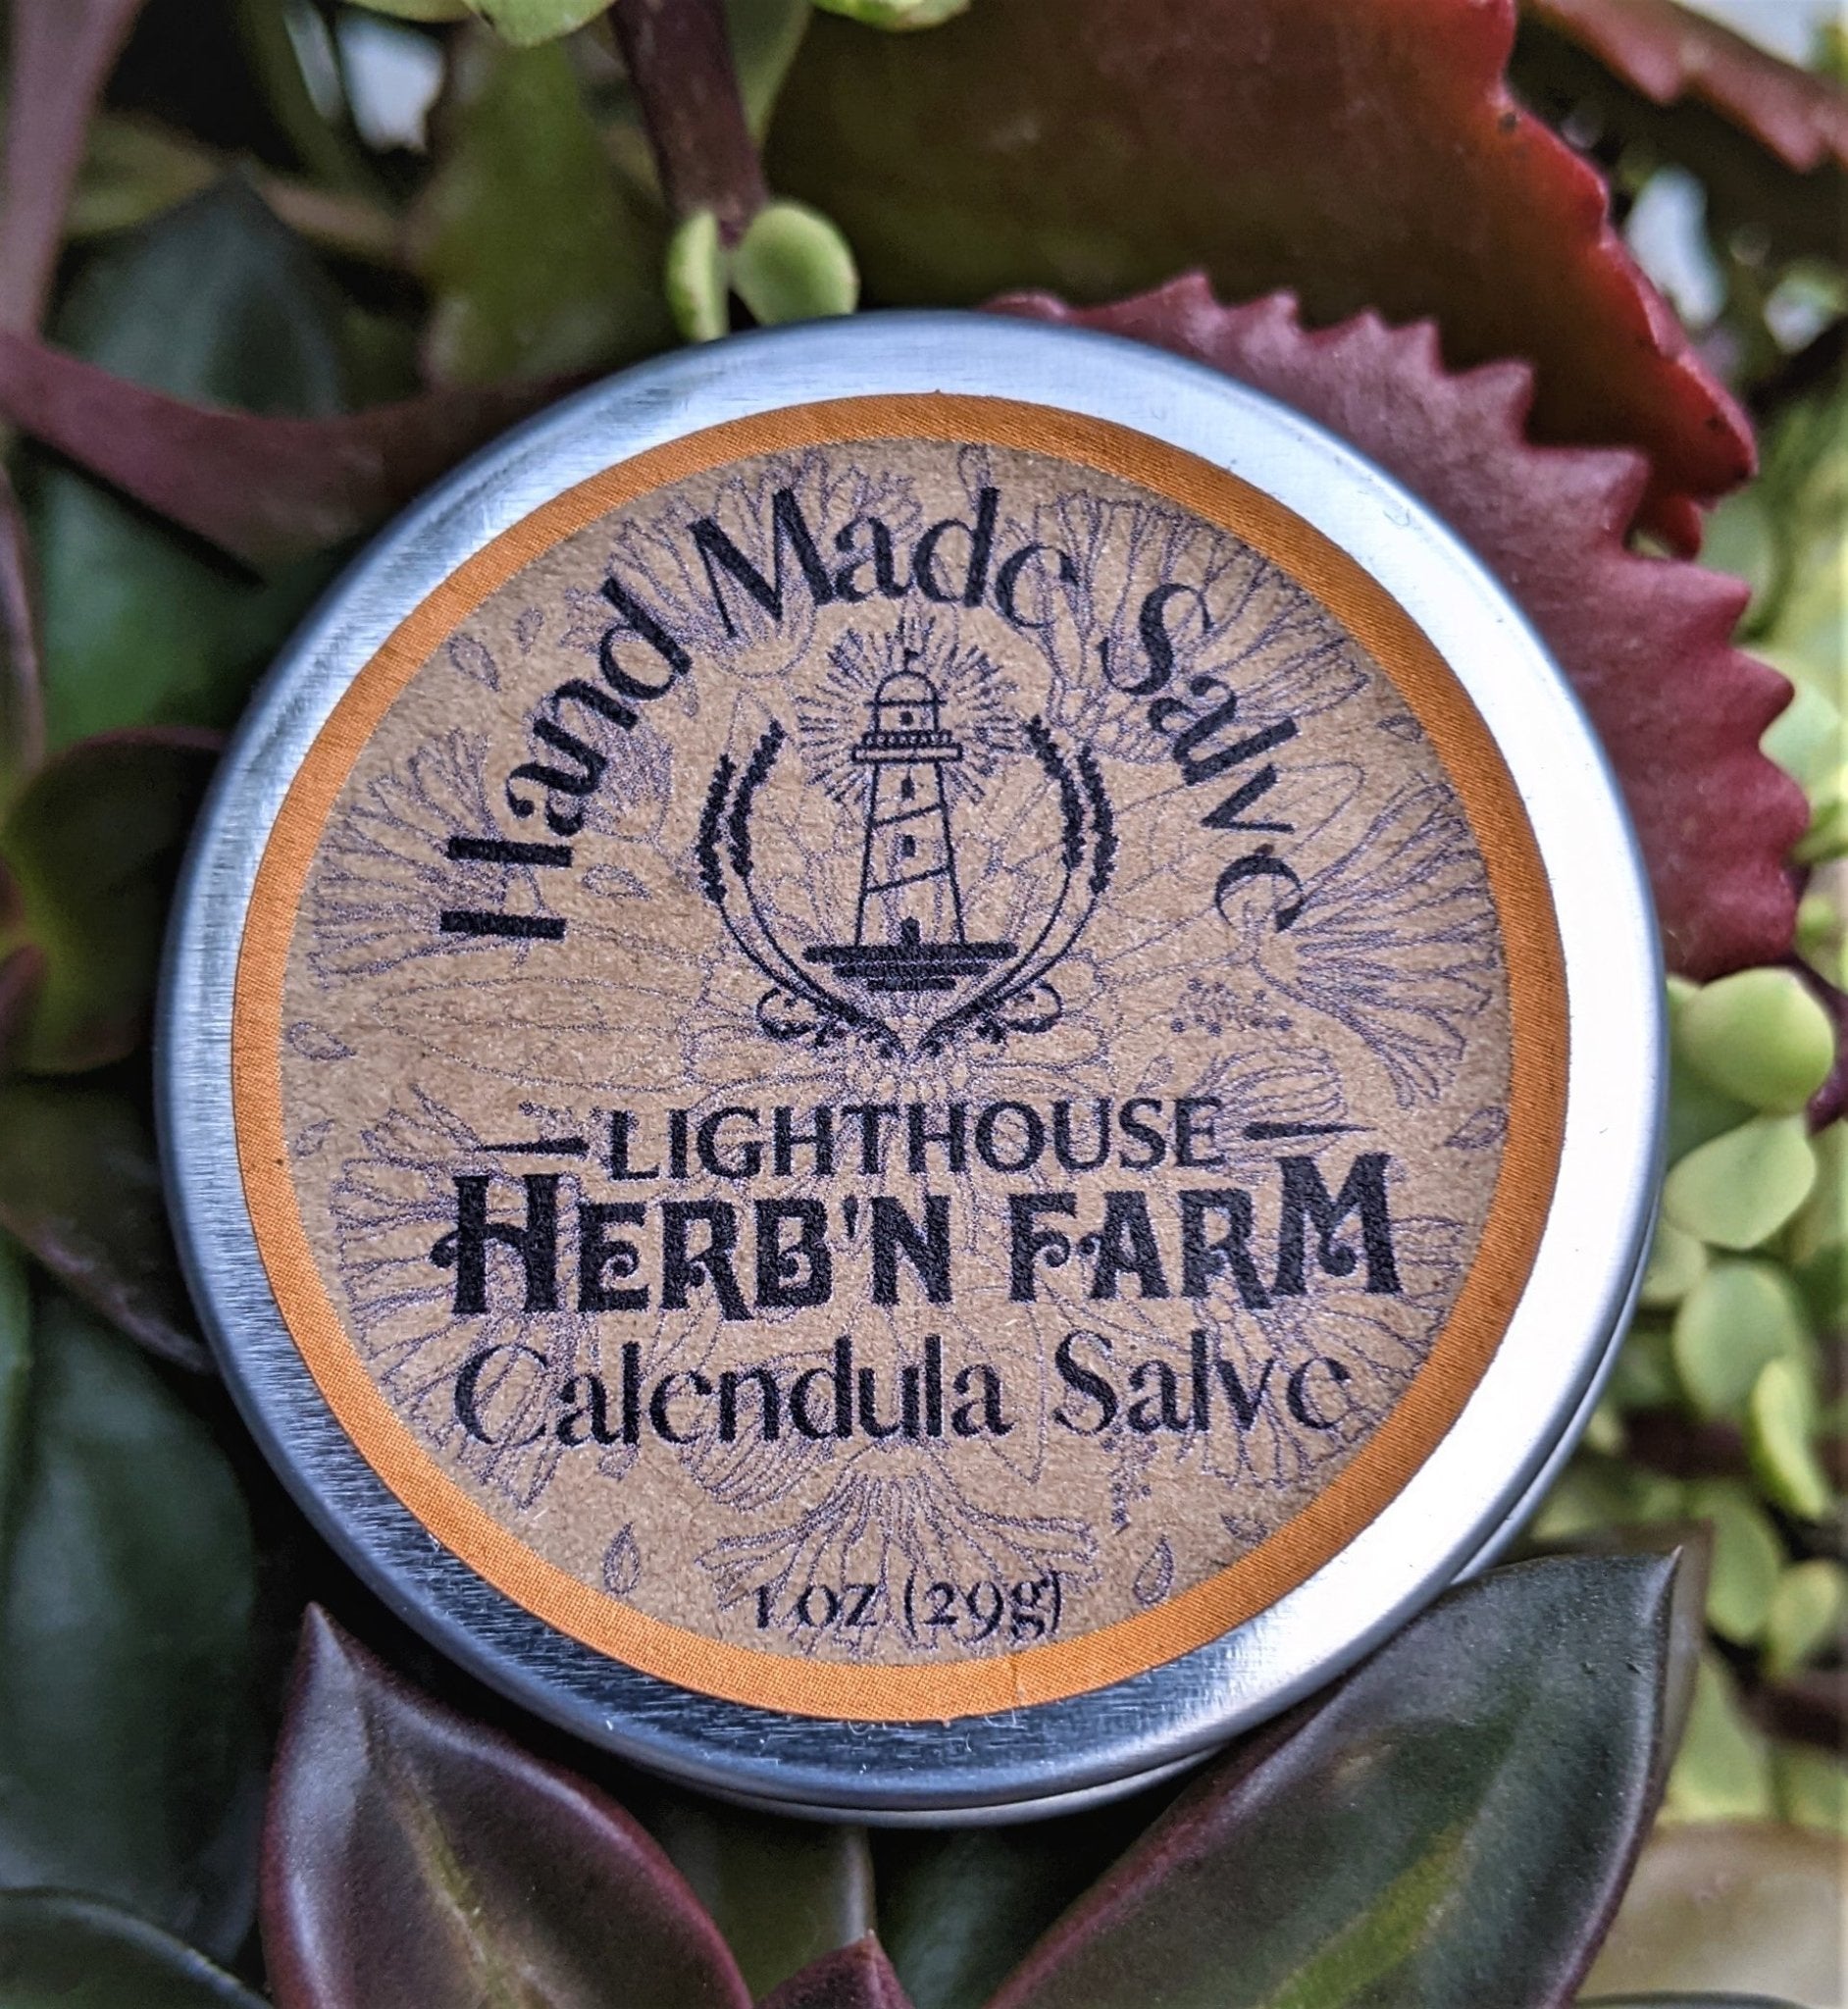 Calendula Salve - Lighthouse Herb'n Farm